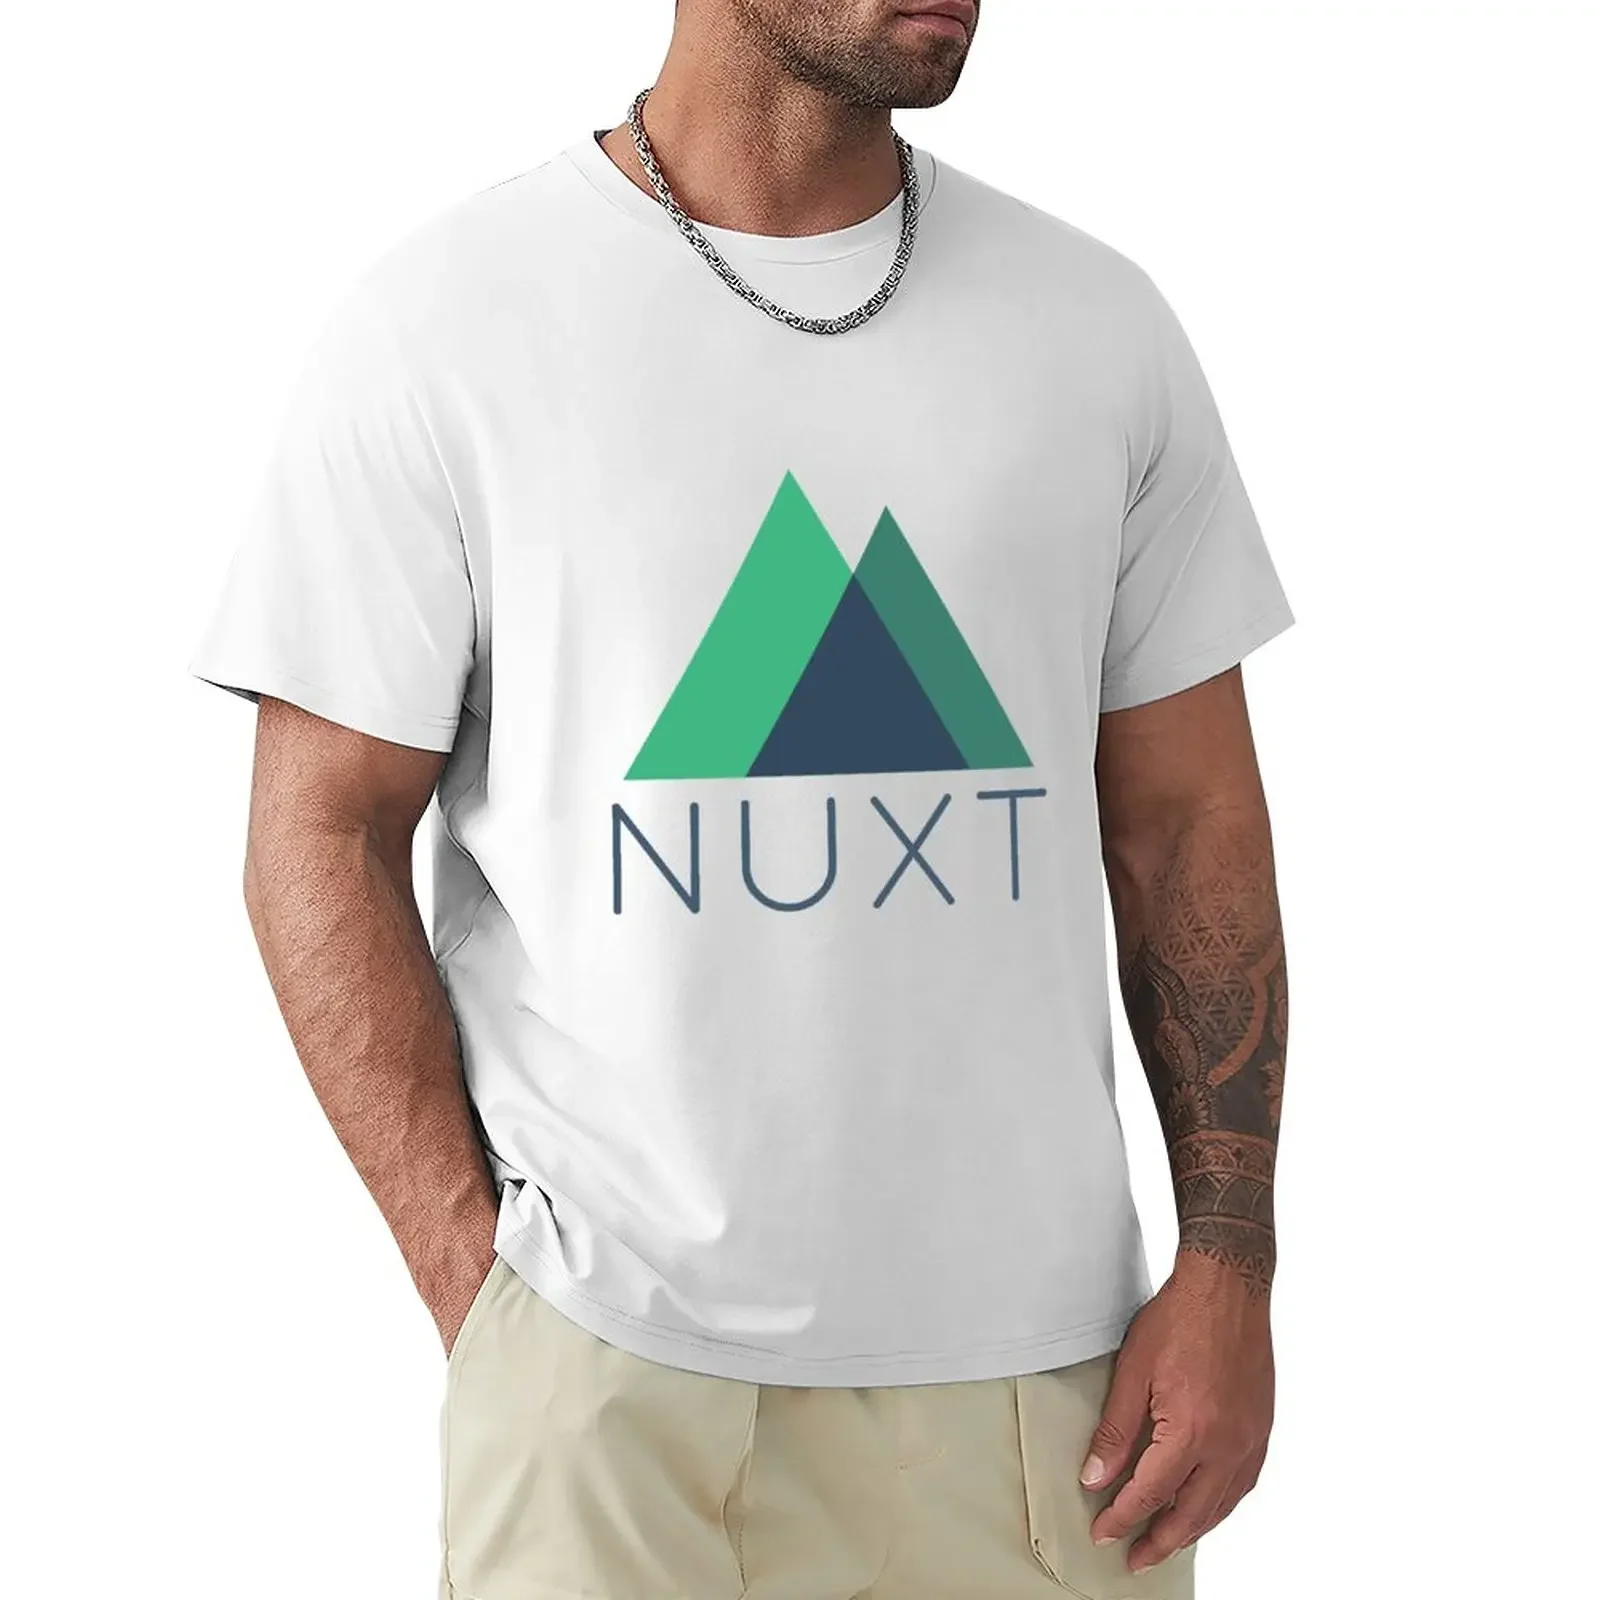 

Футболки с логотипом Nuxt.js, индивидуальный дизайн, простая винтажная мужская одежда